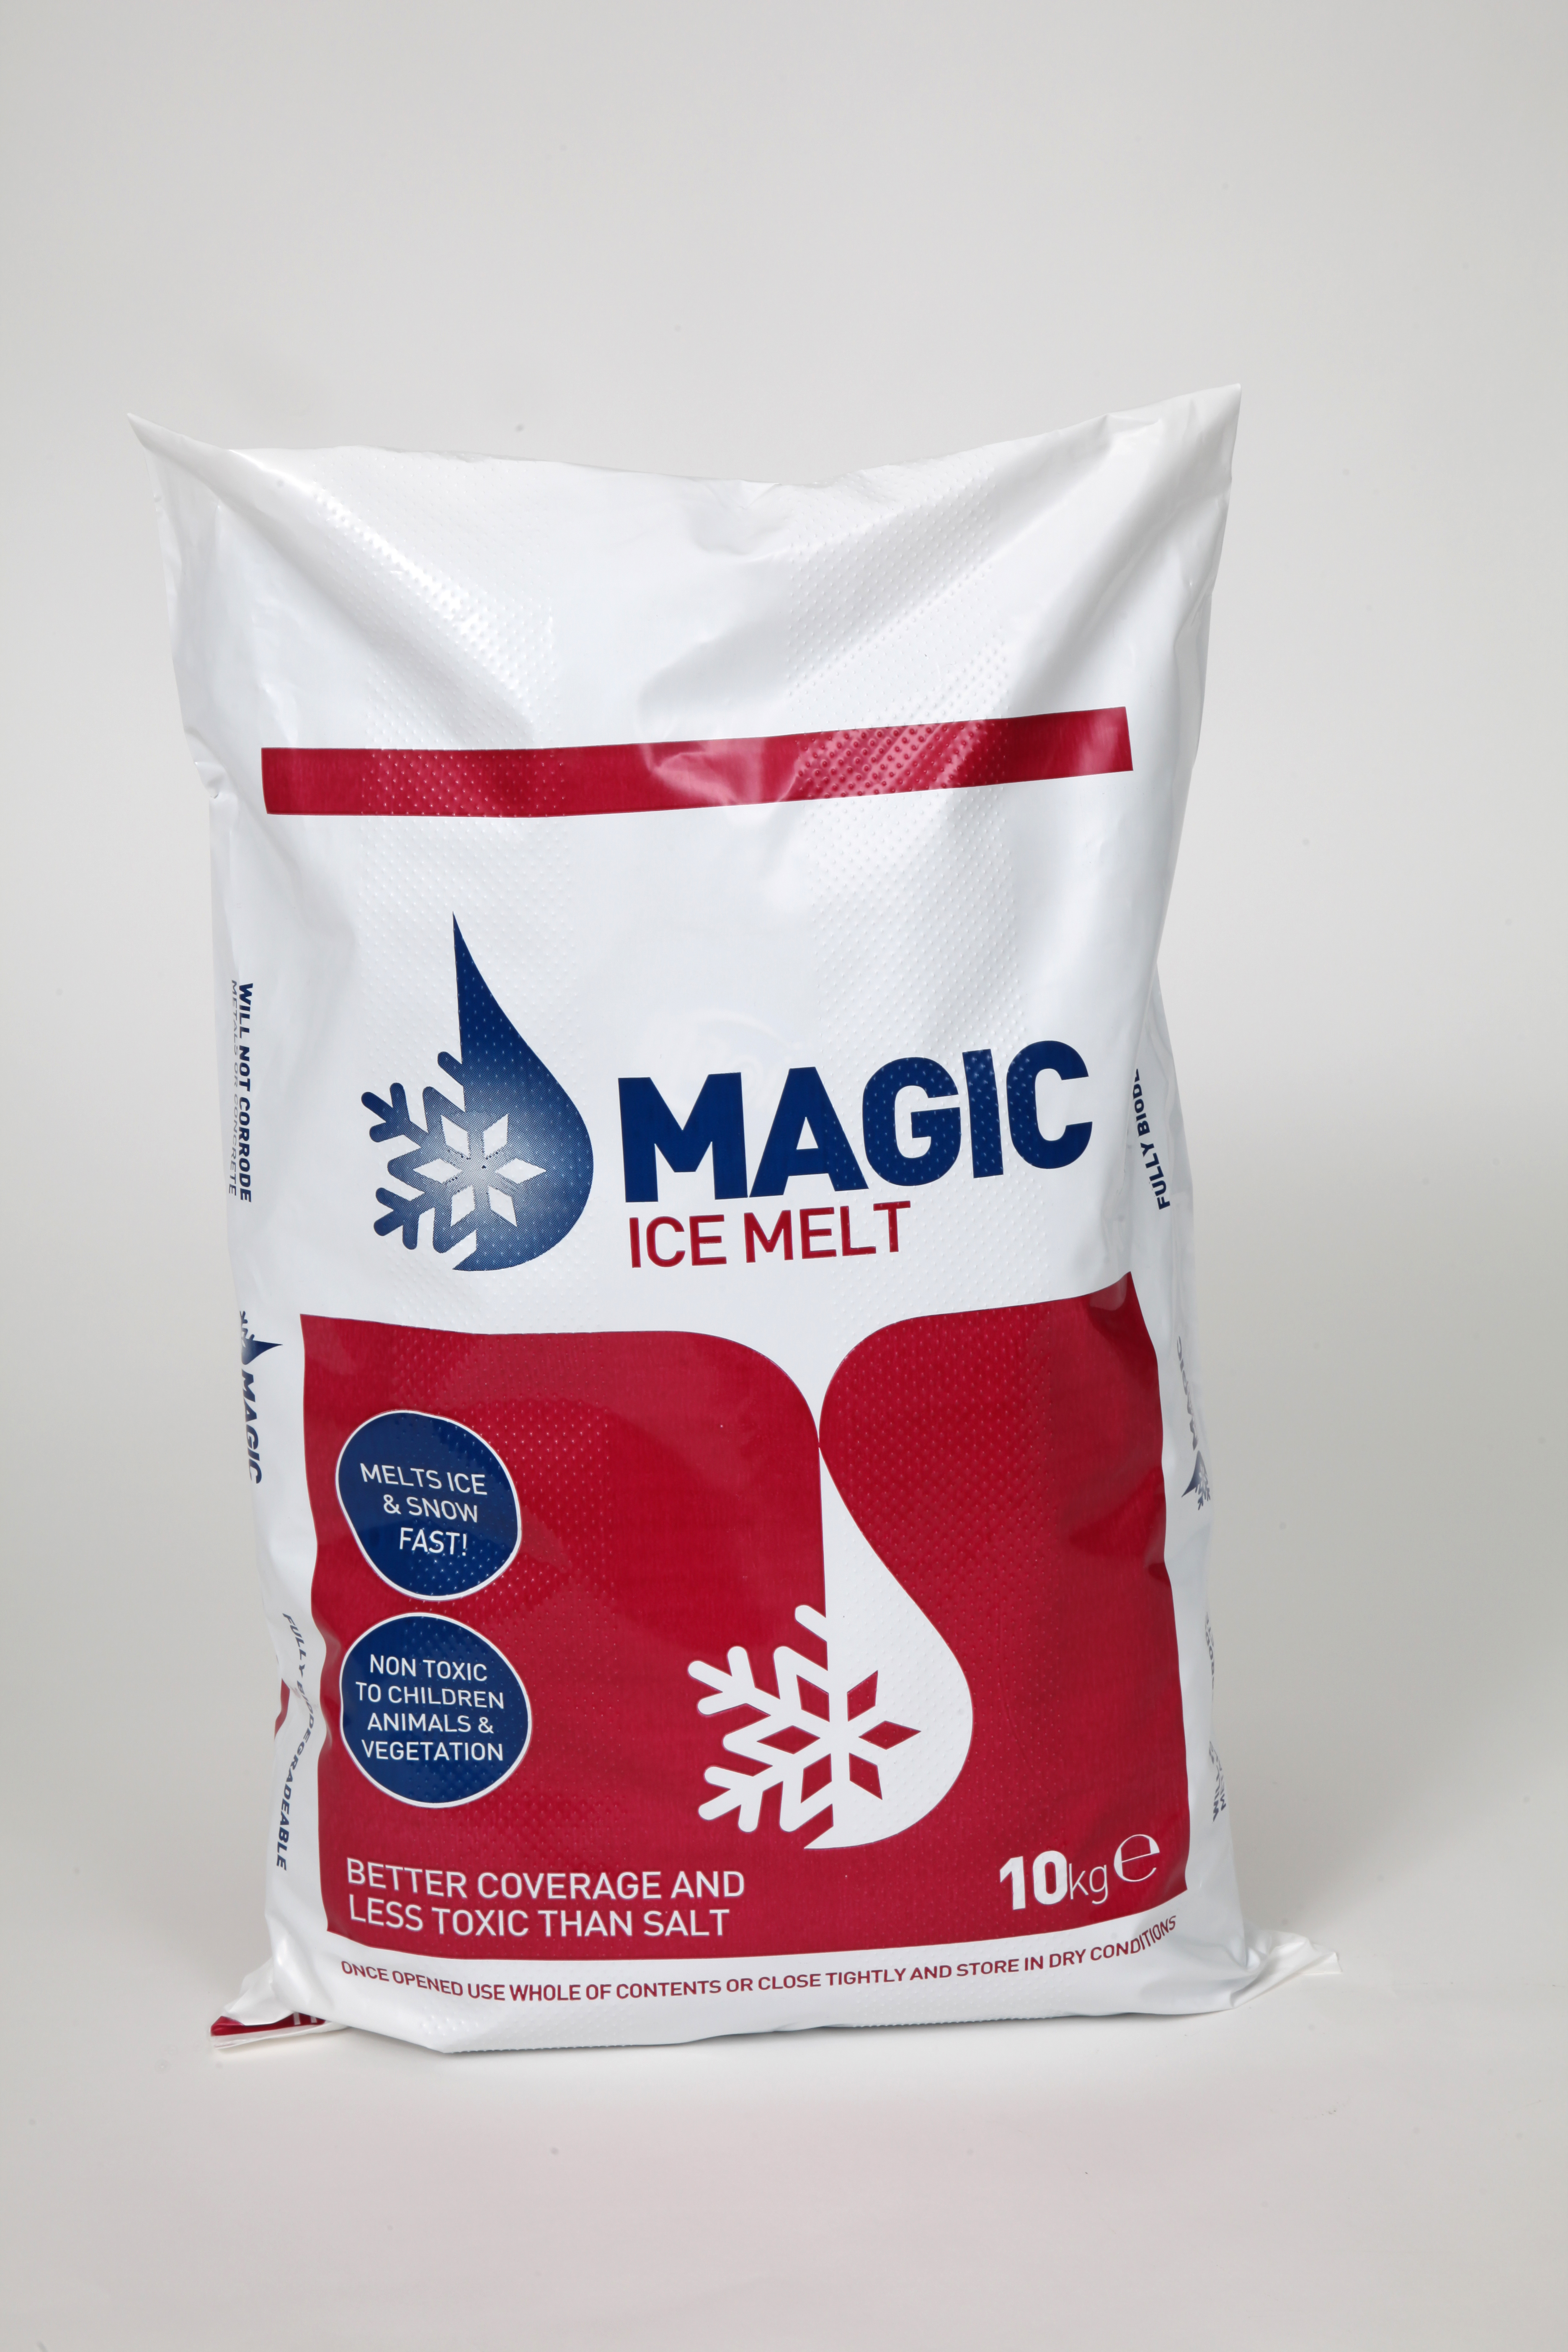 Magic Ice Melt 10Kg Bags Original Cat No: 27/1453